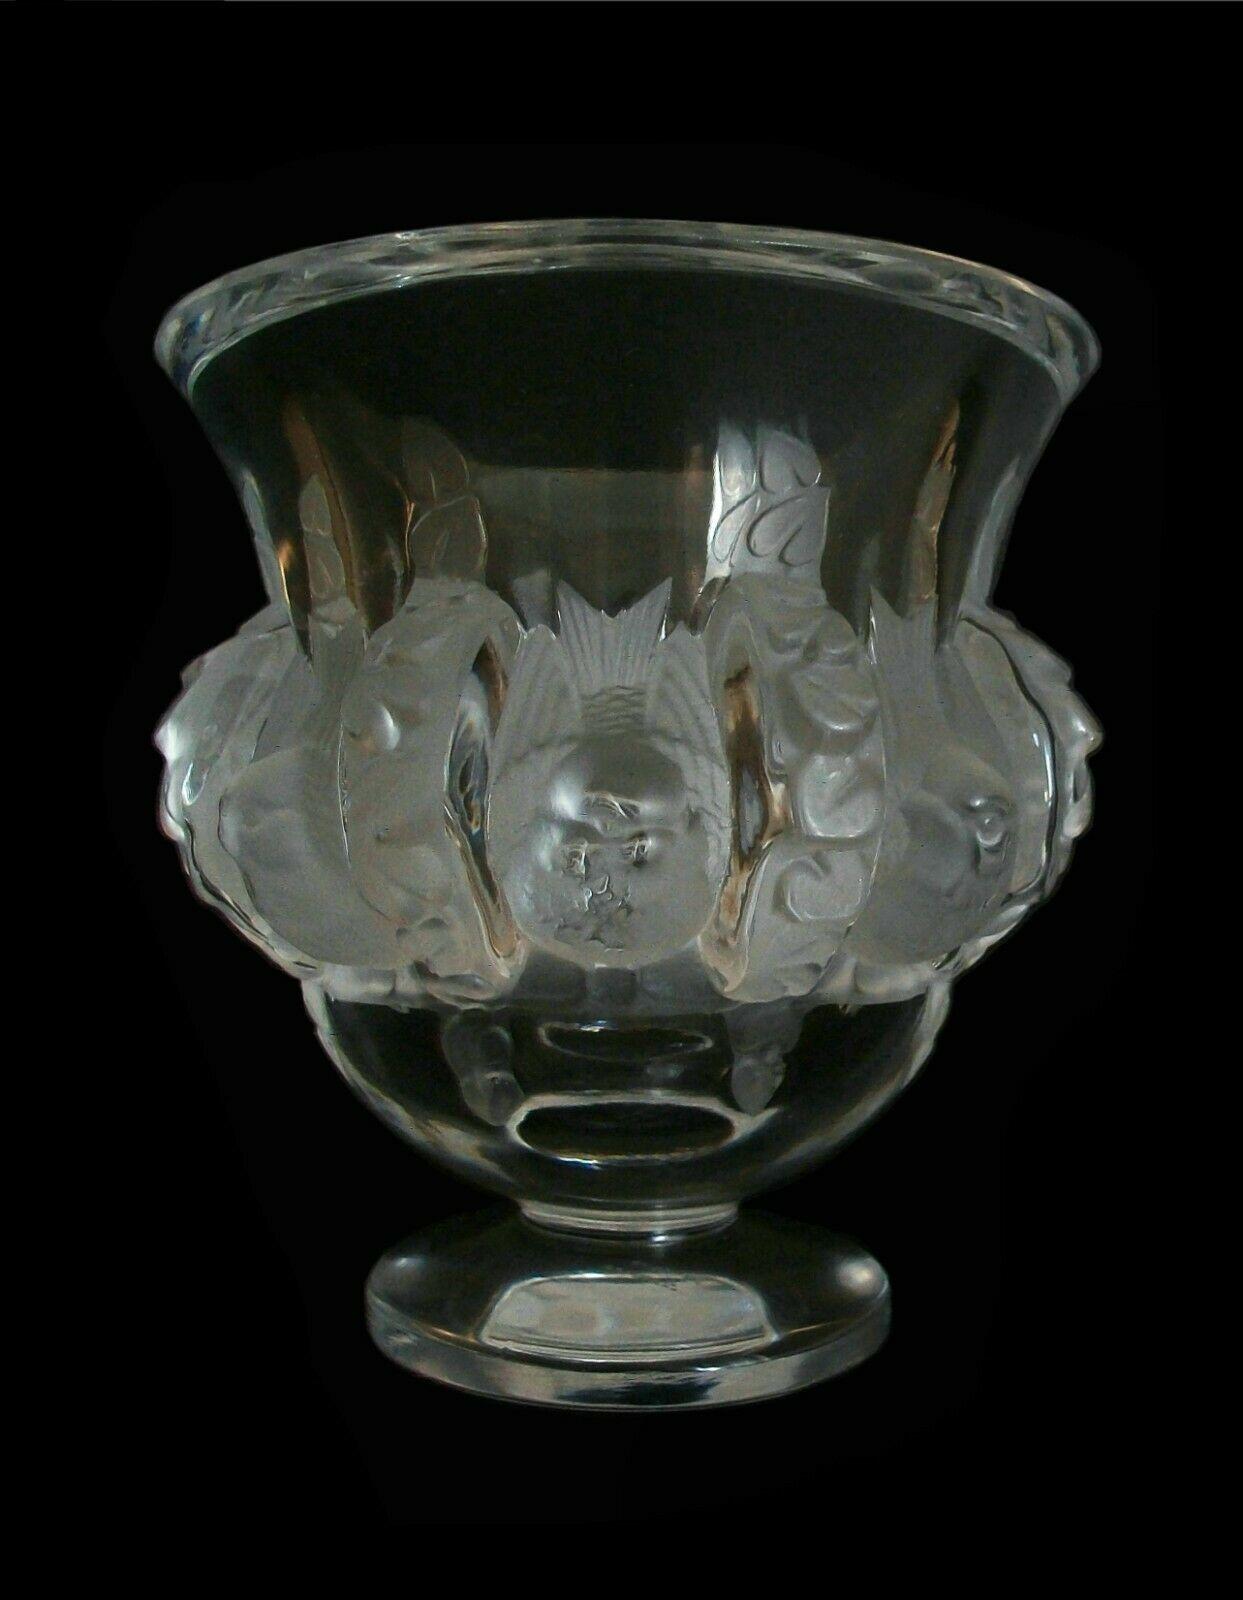 LALIQUE - 'Dampierre' - Vase en cristal de luxe de style Art of Vintage, conçu en 1948 par Marc Lalique (fils de René Lalique) - finition givrée frappante sur la bande centrale représentant des oiseaux et des feuilles - finition polie transparente